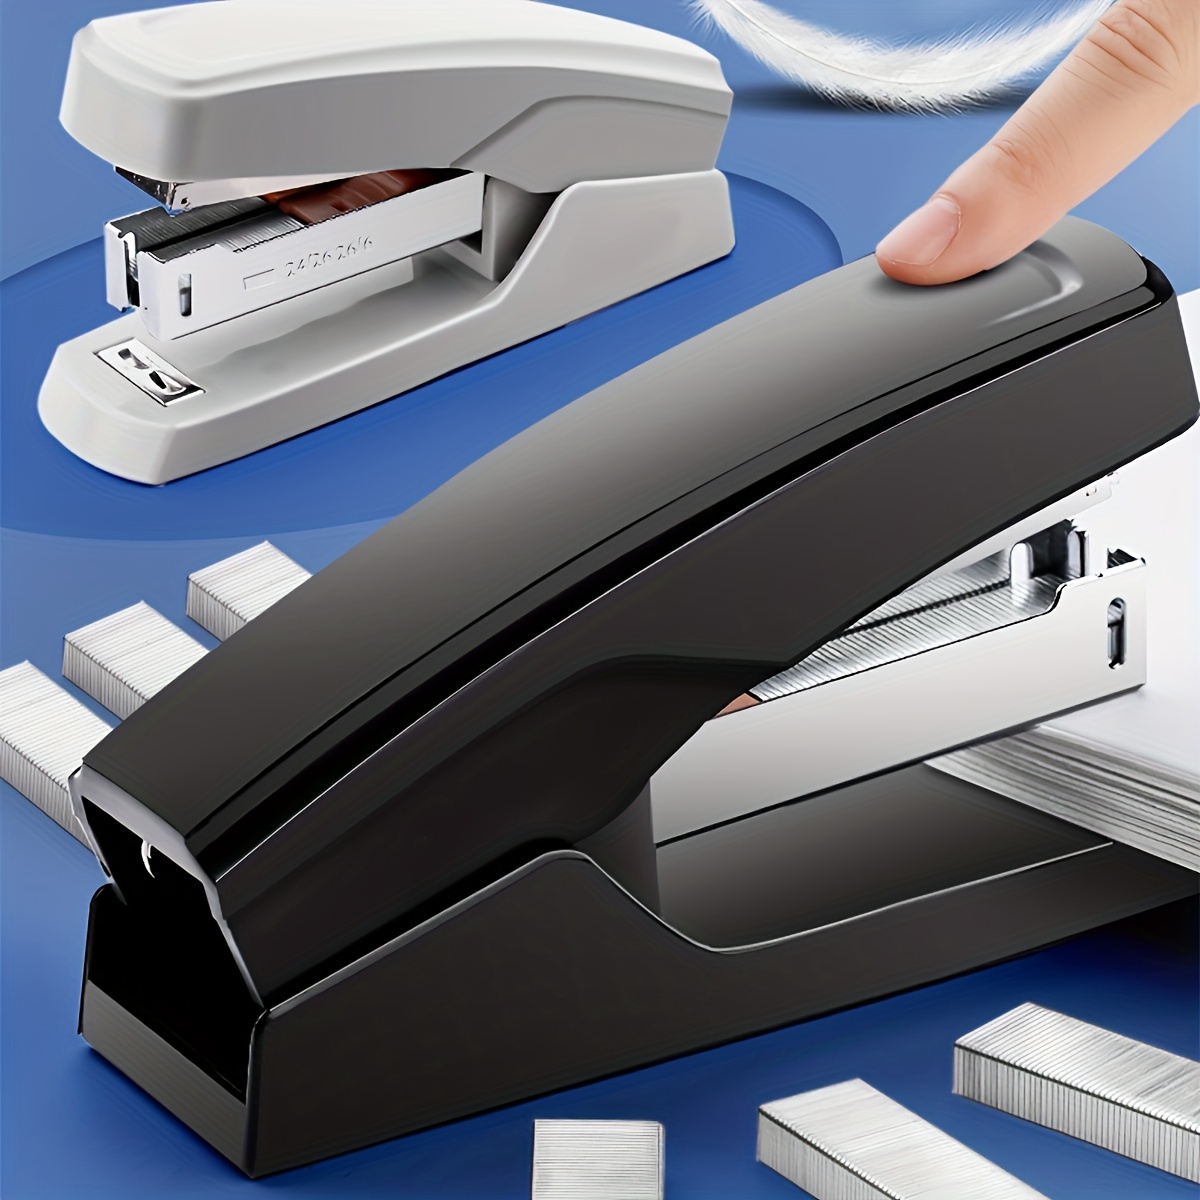 School office rotatable stapler 24/6 standard regular staples